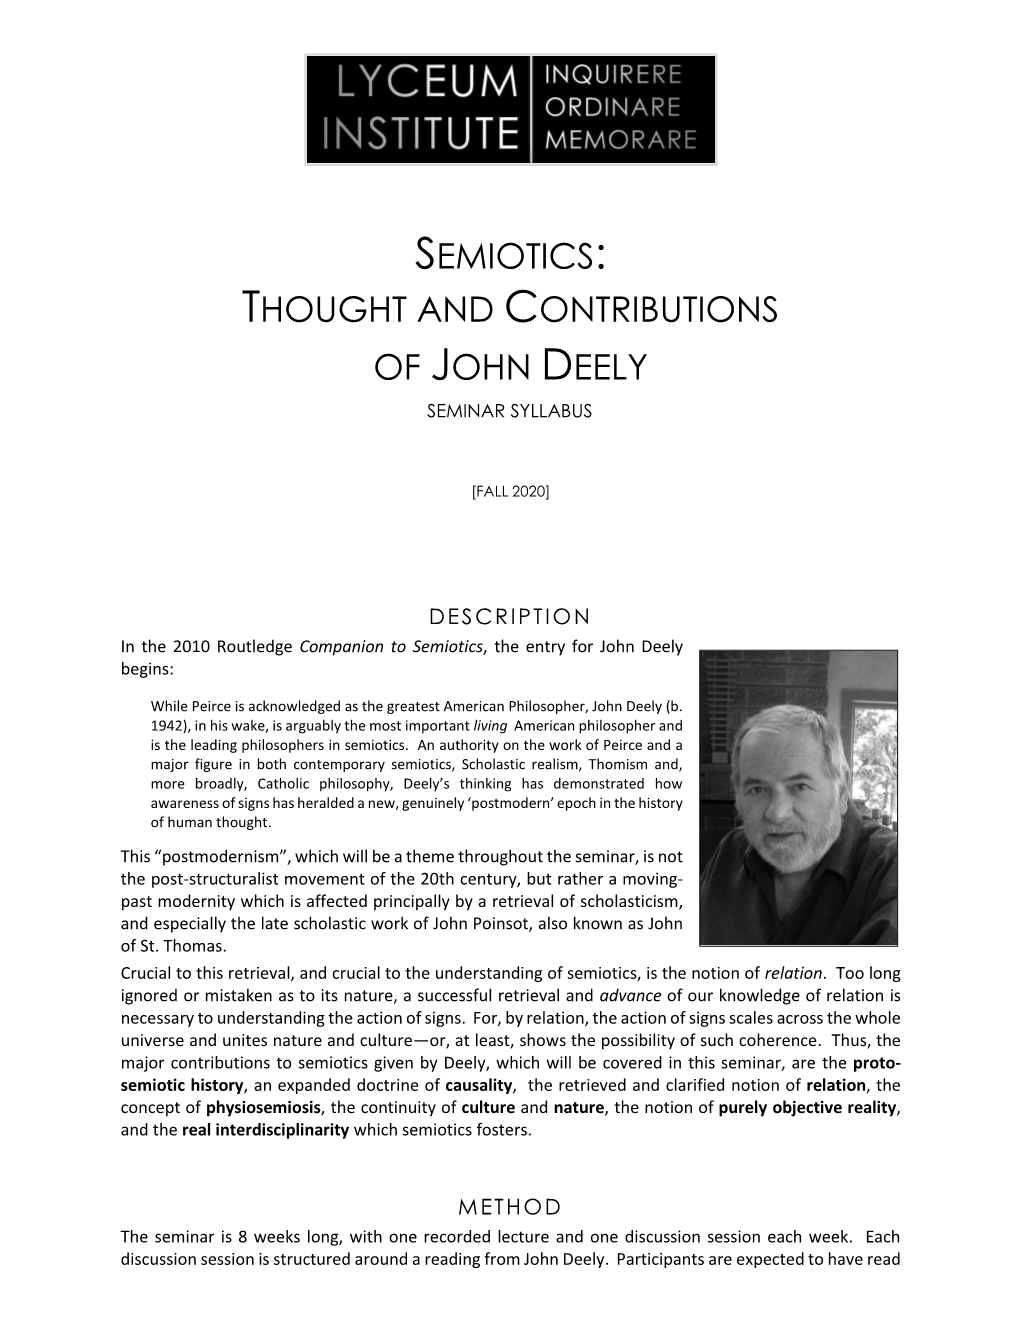 Semiotics: Thought and Contributions of John Deely Seminar Syllabus